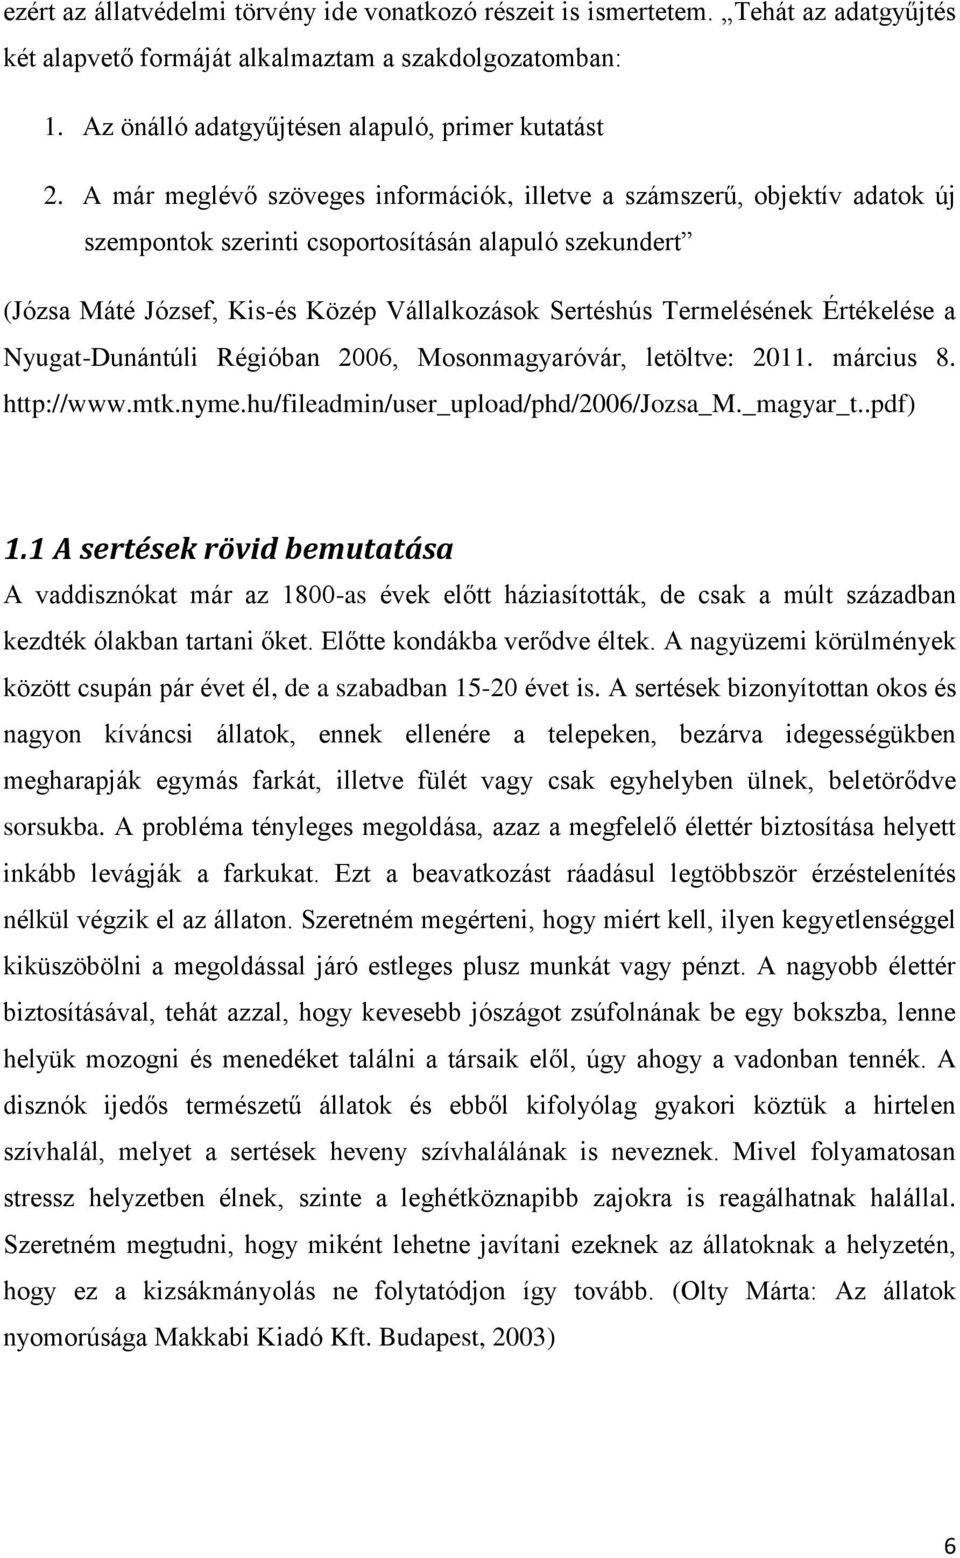 Termelésének Értékelése a Nyugat-Dunántúli Régióban 2006, Mosonmagyaróvár, letöltve: 2011. március 8. http://www.mtk.nyme.hu/fileadmin/user_upload/phd/2006/jozsa_m._magyar_t..pdf) 1.